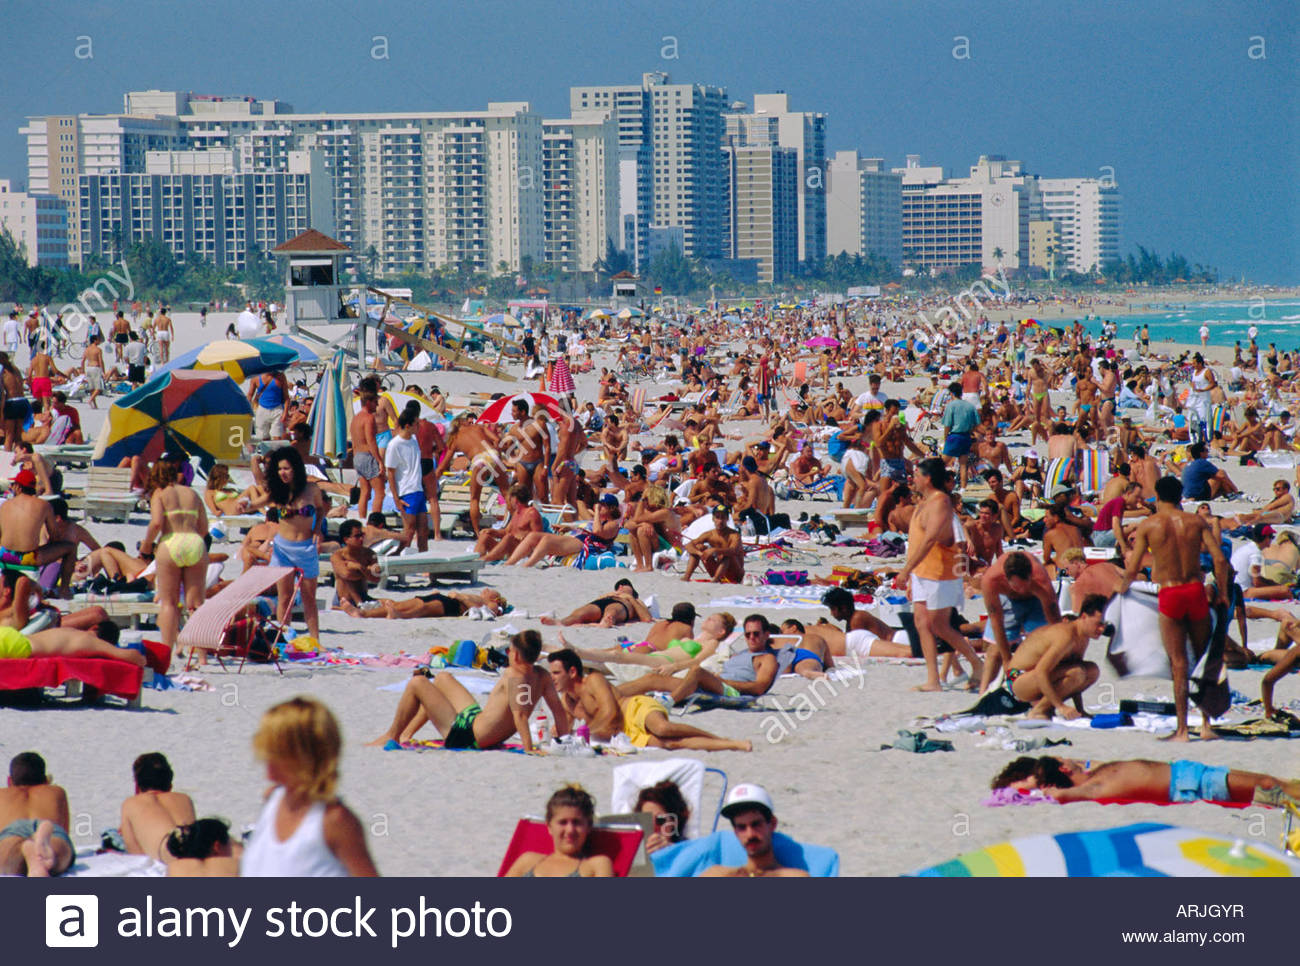 crowded-beach-miami-beach-florida-usa-ARJGYR.jpg